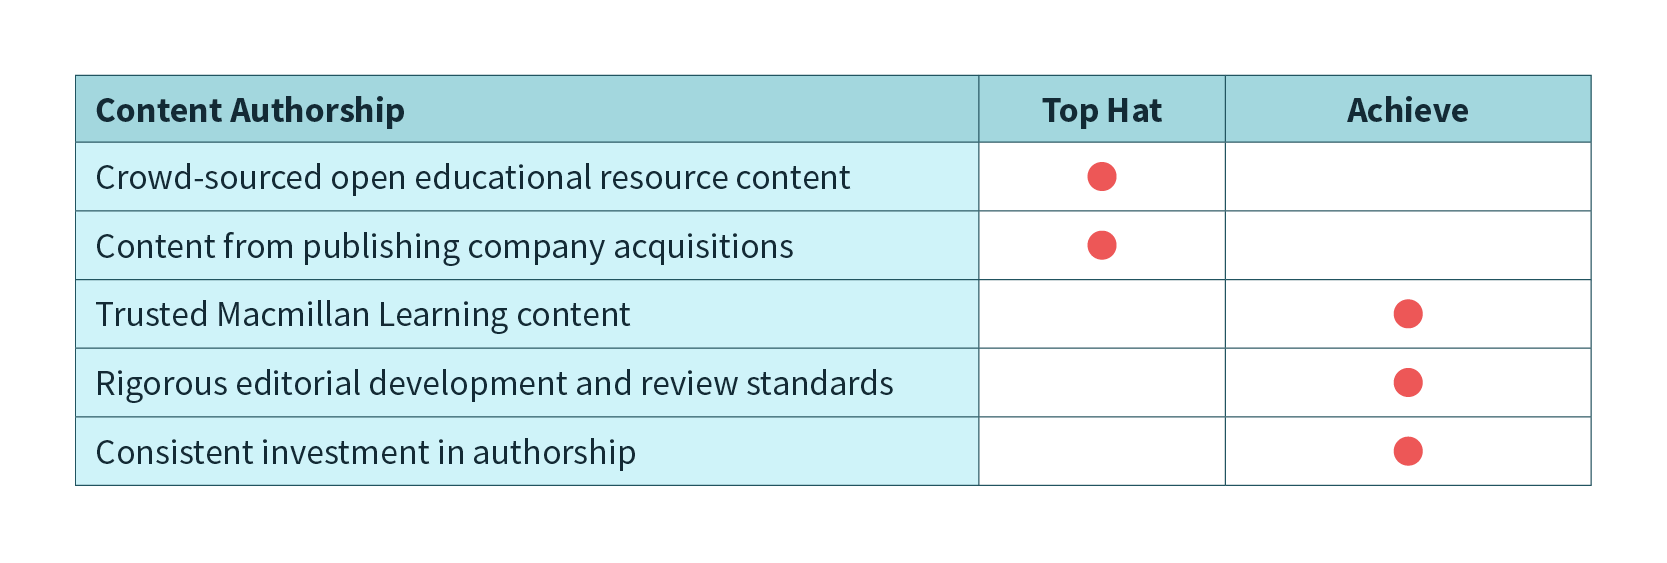 achieve-vs-tophat-content-authorship